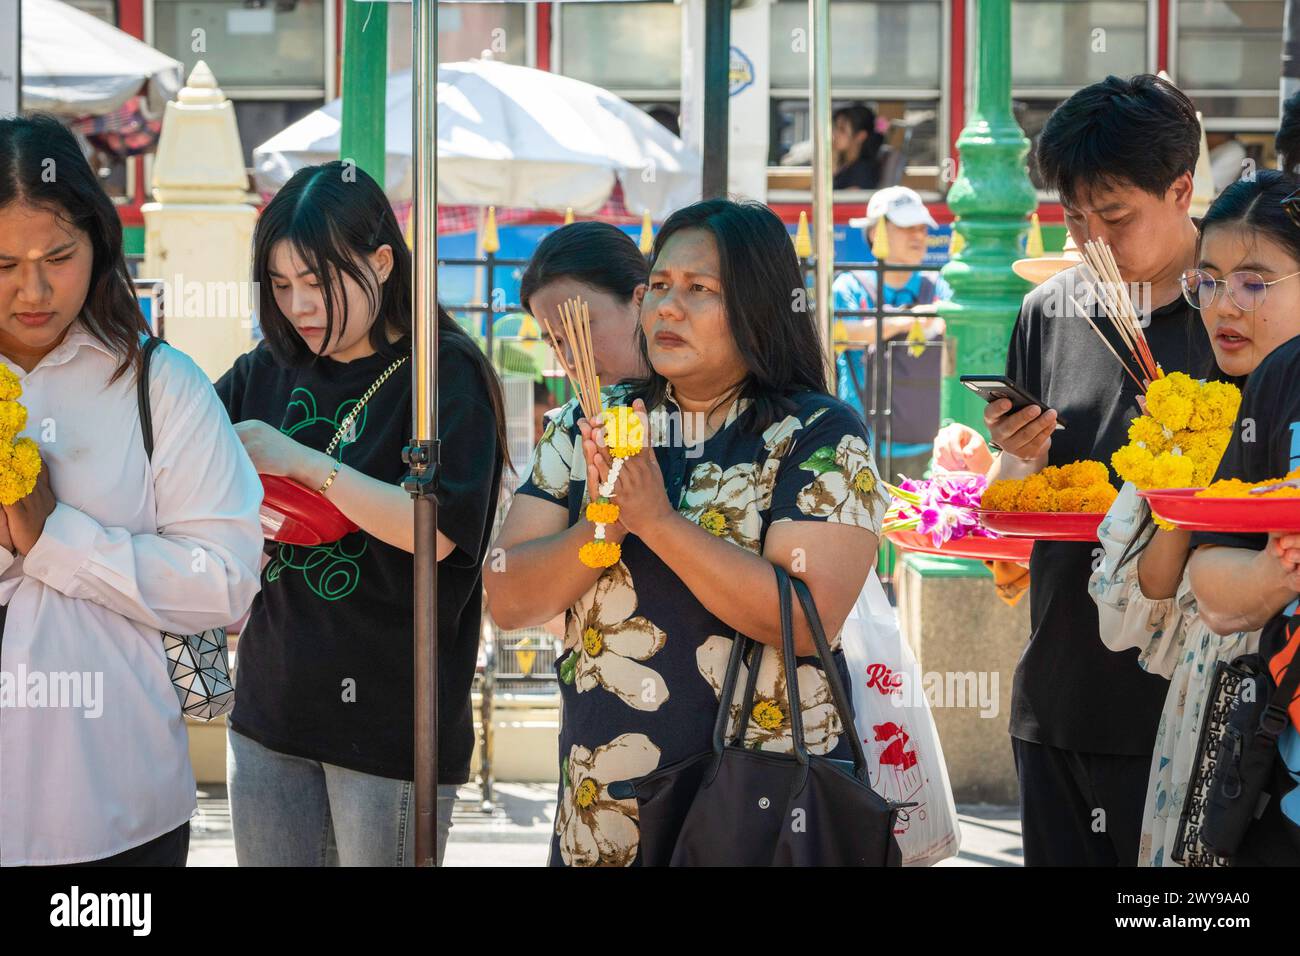 Nel centro di Bangkok, un incontro eterogeneo di turisti e locali thailandesi converge al Santuario di Erawan, ciascuno impegnato in preghiera con le proprie offerte. Bangkok, Thailandia. Foto Stock